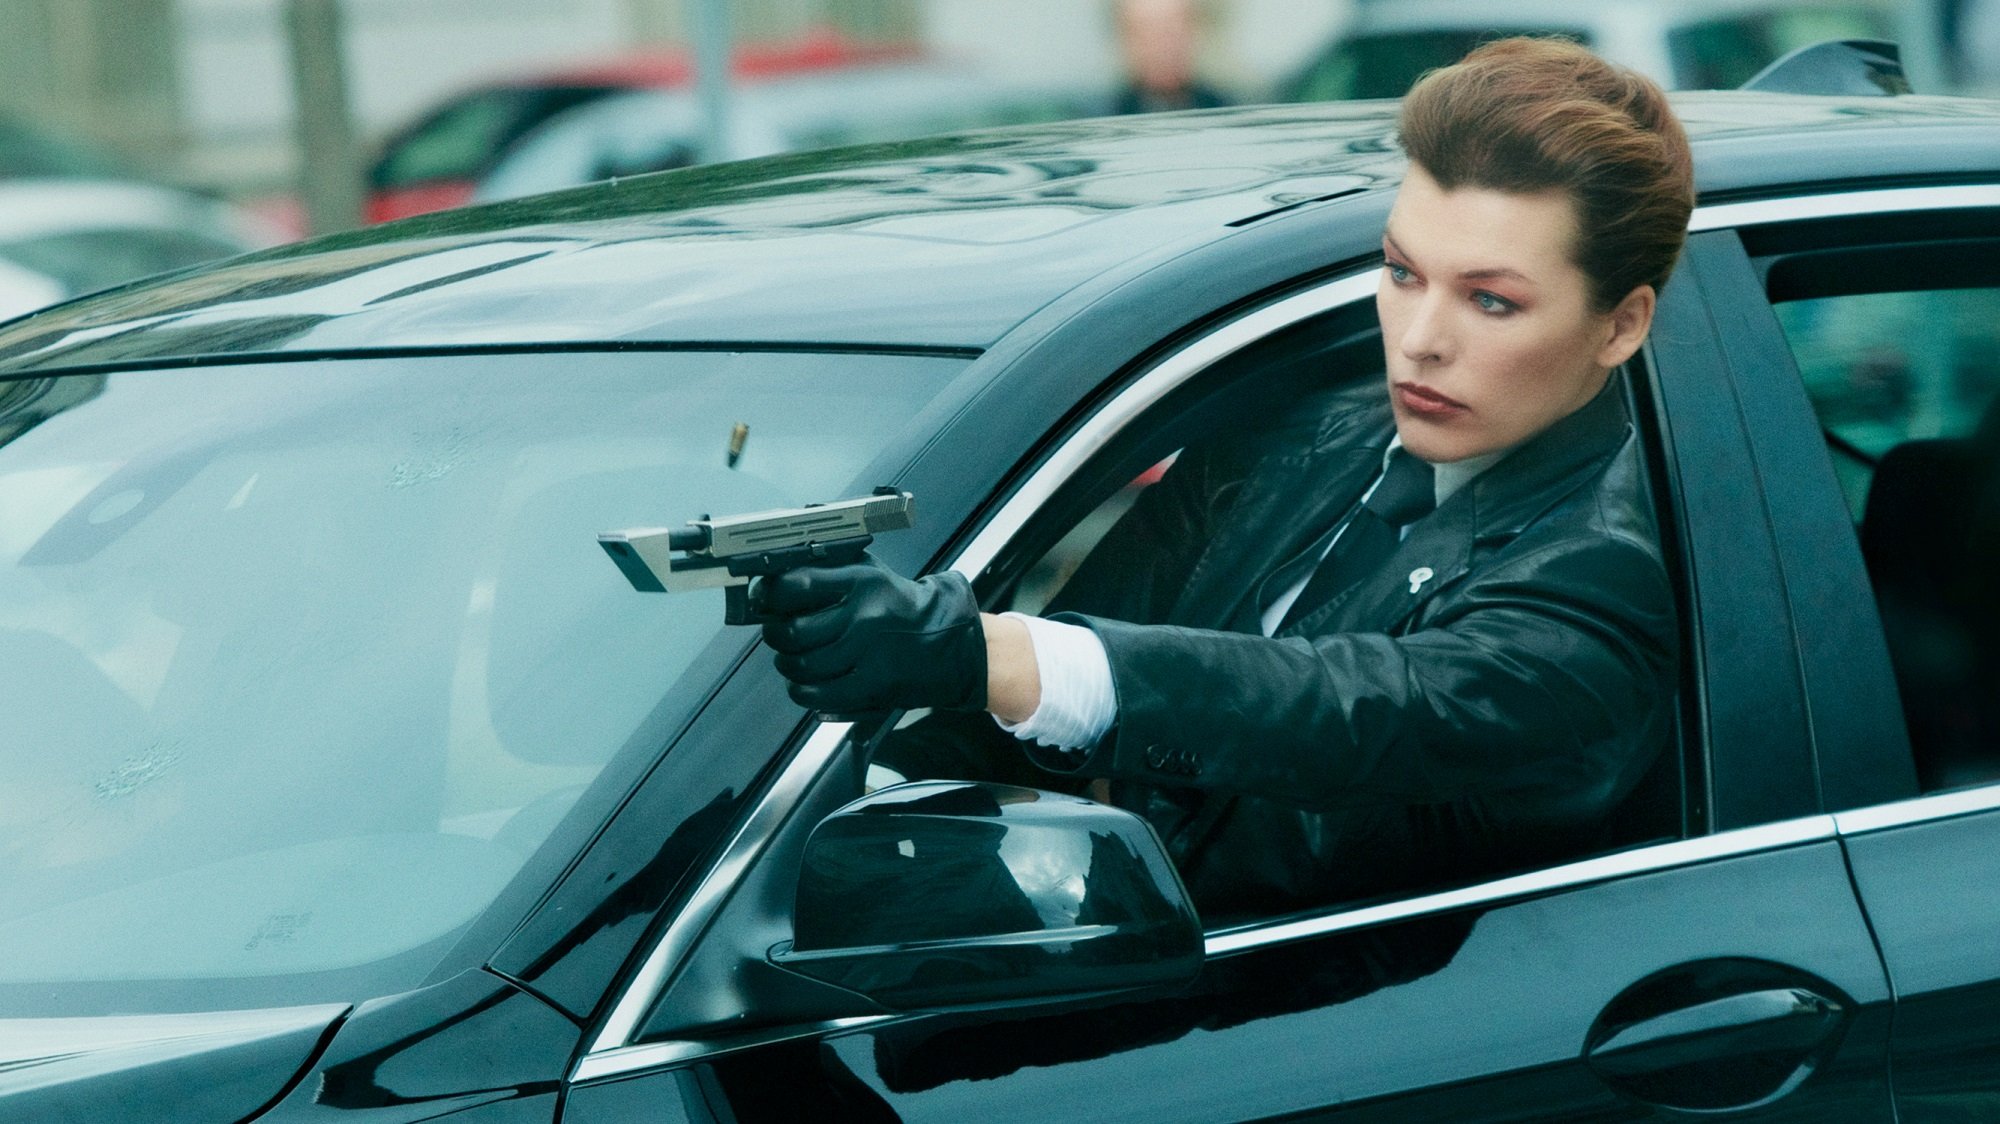 Milla Jovovich shoots a gun out a car window